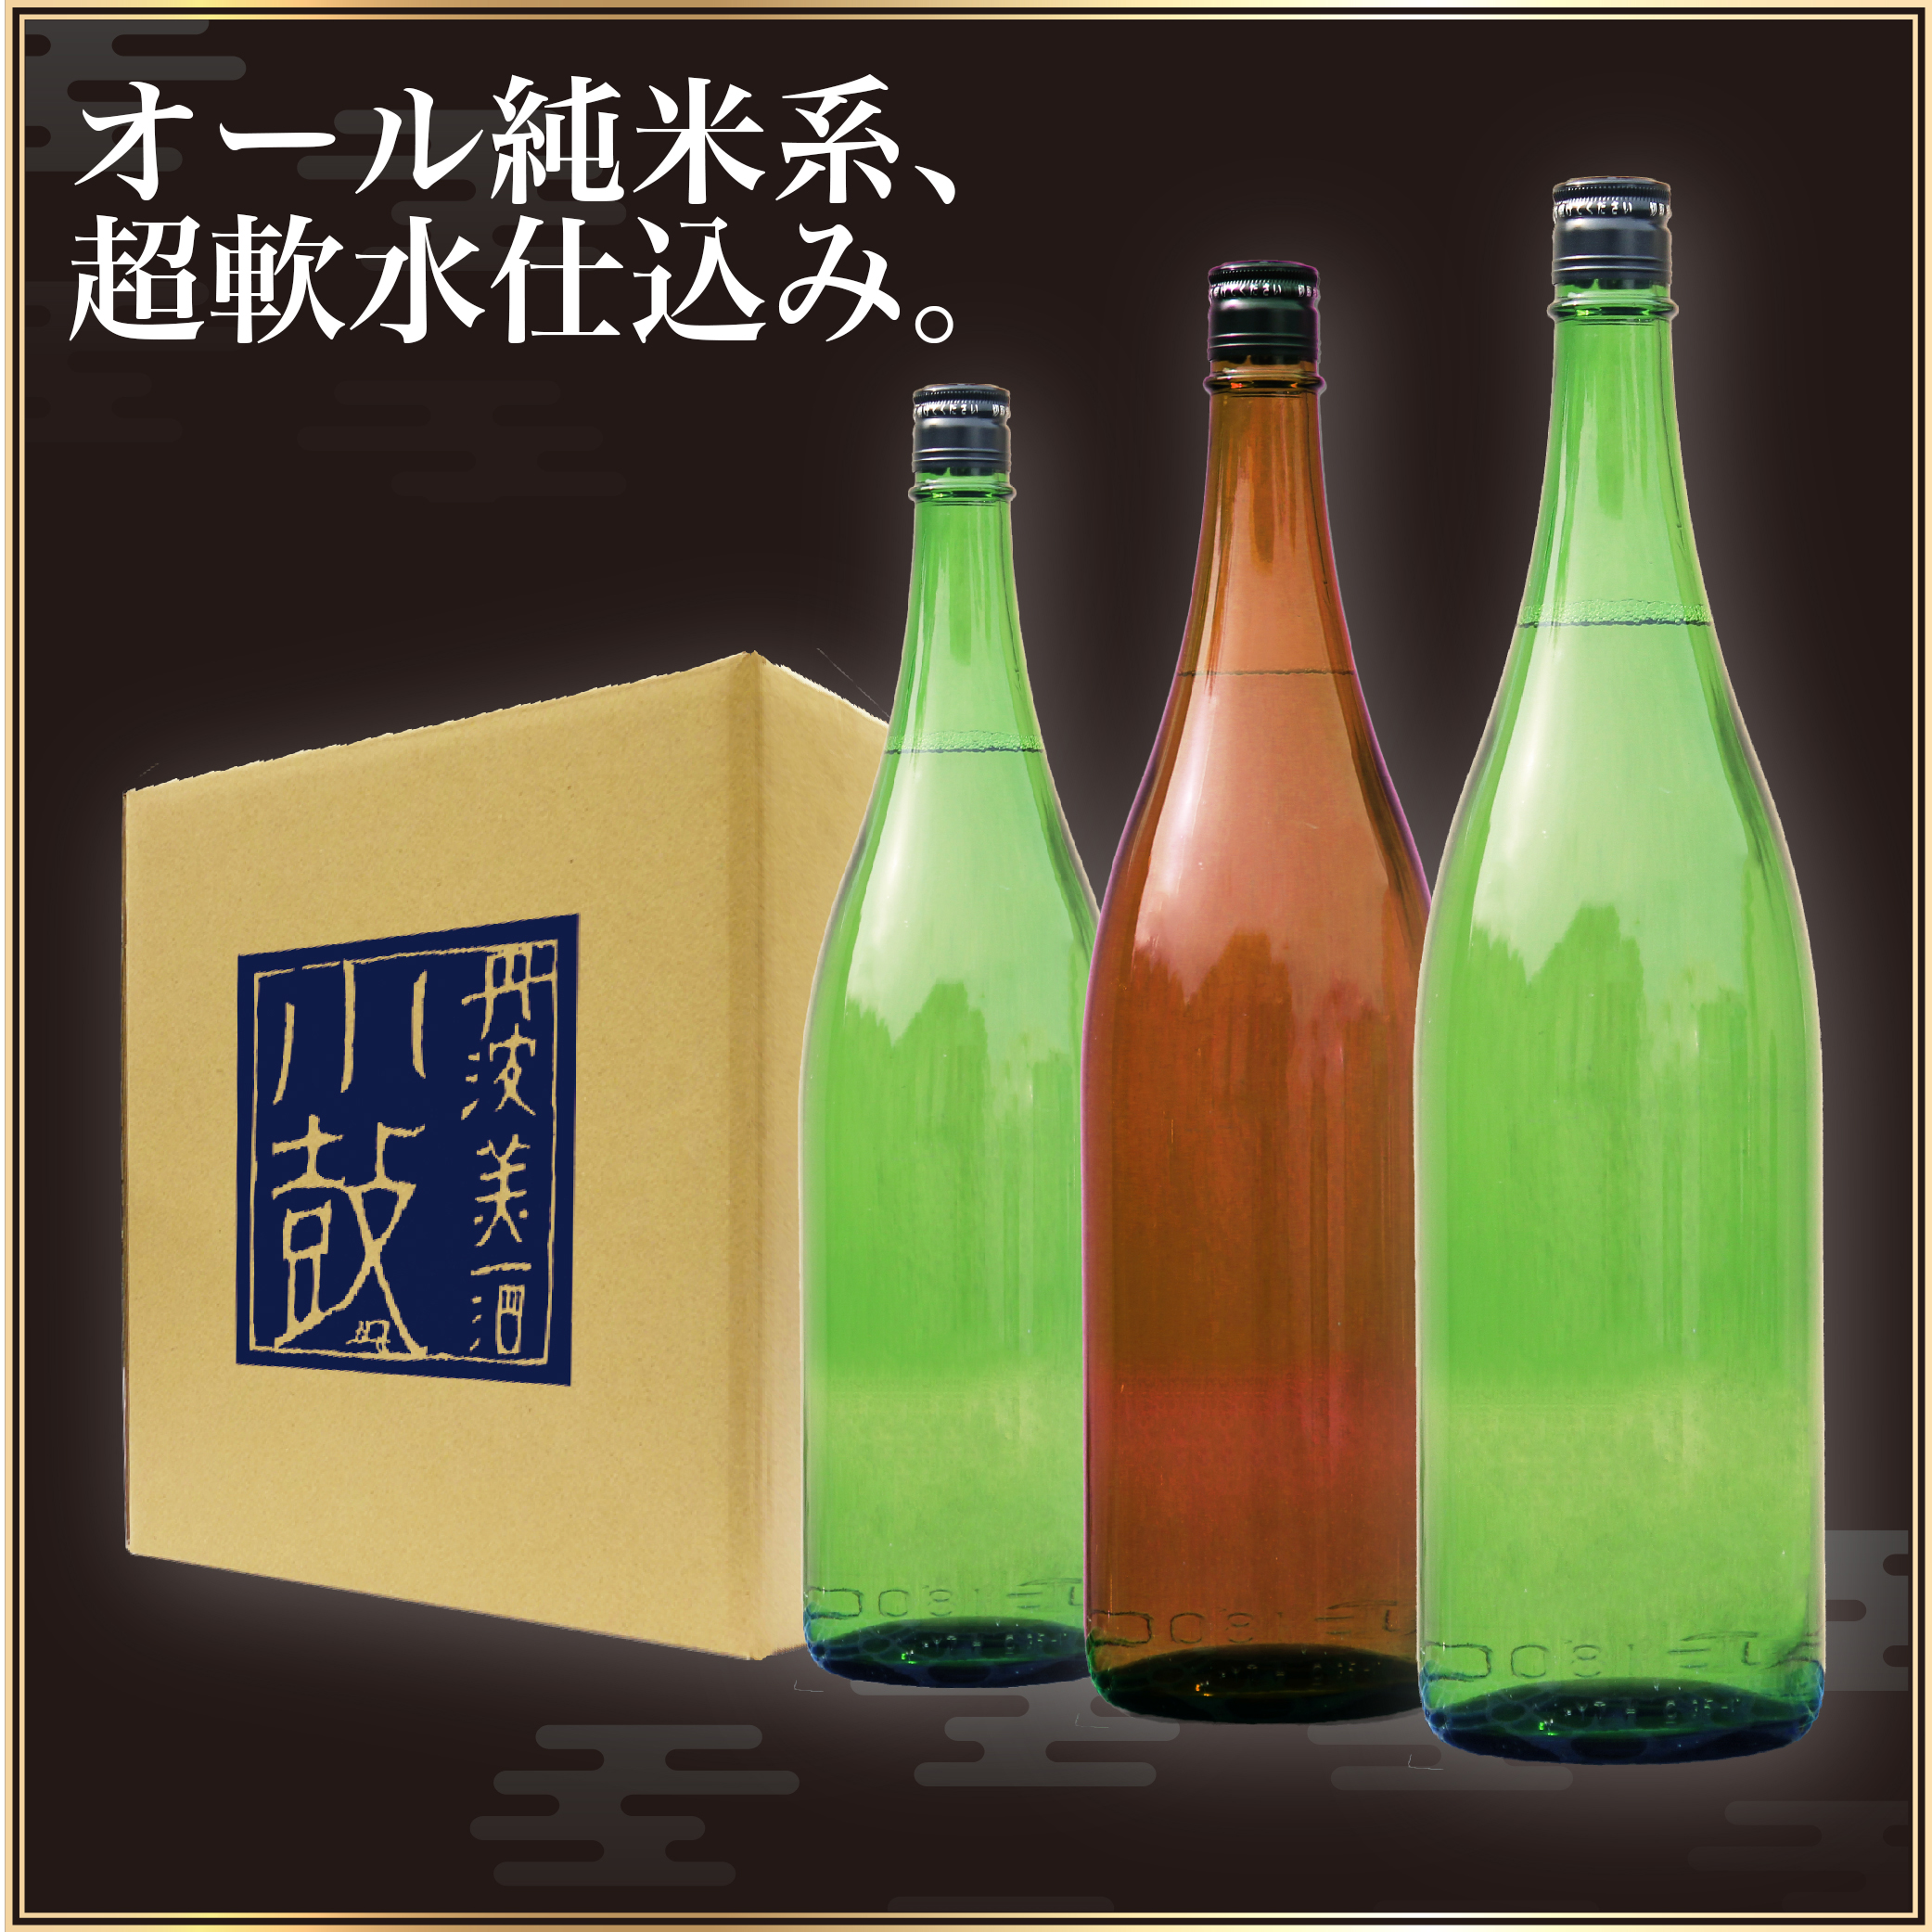 ご自宅用に ラベルなしの日本酒をお安くお愉しみください 2021公式店舗 日本酒 1800ml×3本 楽天1位 飲み比べセット 中身で勝負セット